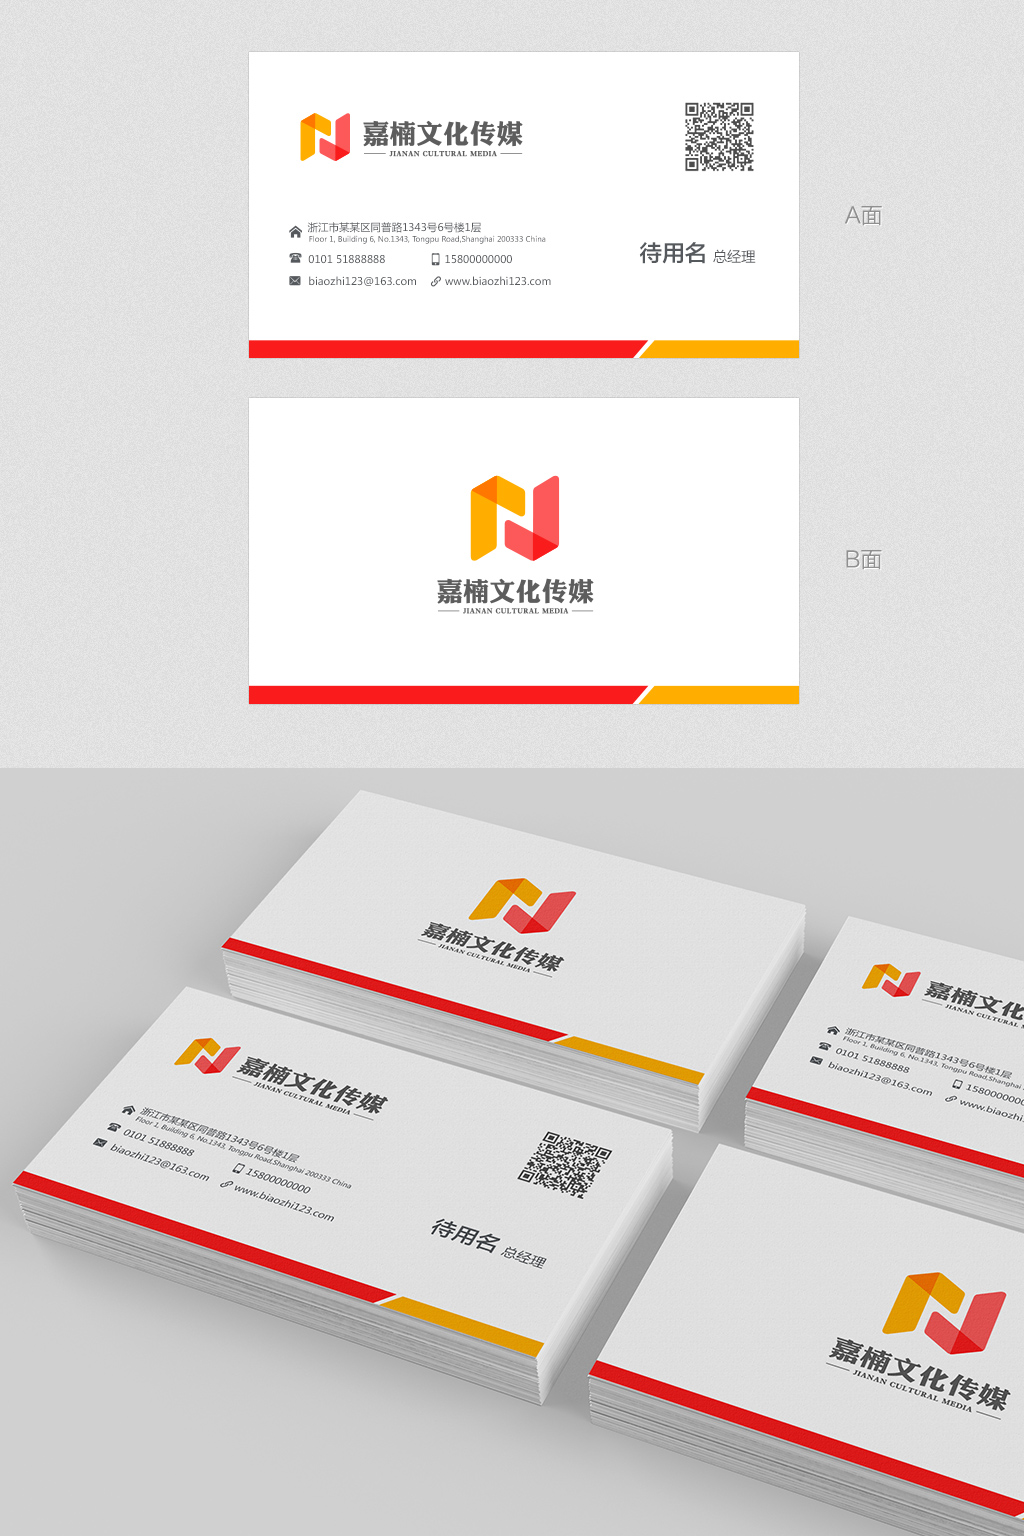 吴晓伟的嘉楠文化传媒（嘉兴）有限公司名片设计logo设计